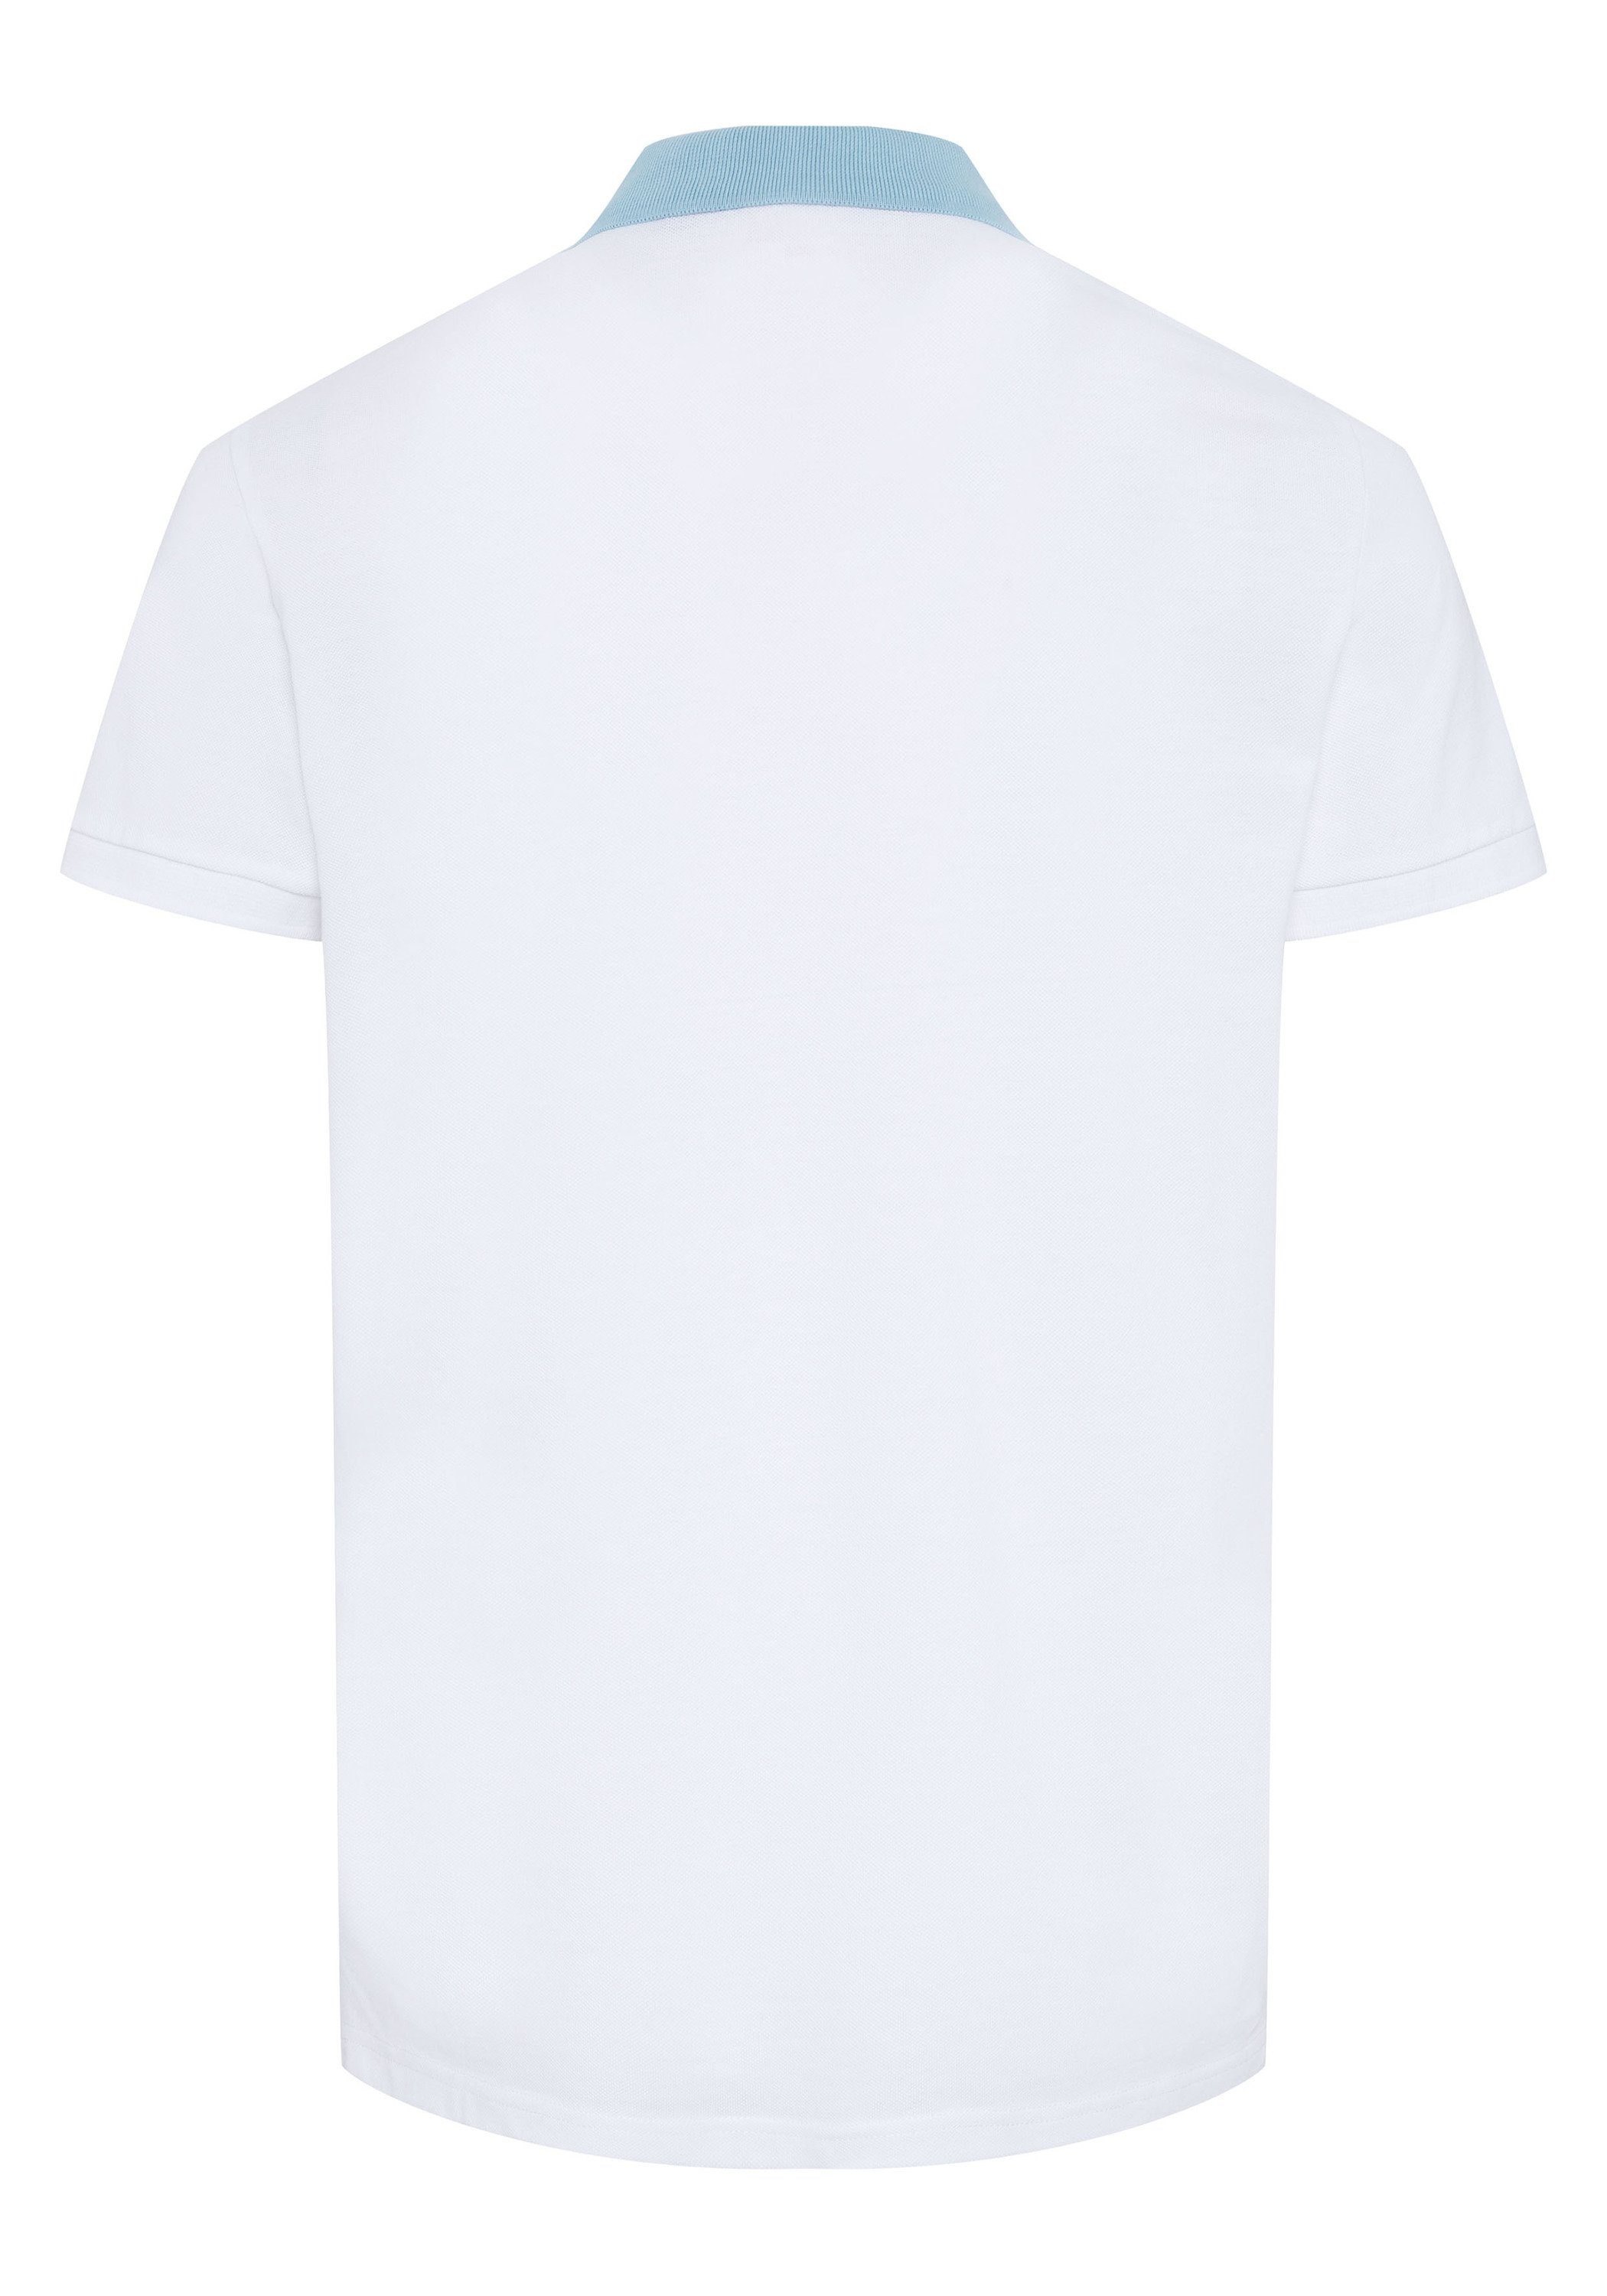 OKLAHOMA PREMIUM DENIM Poloshirt mit 11-0601 Print White Bright grafischem